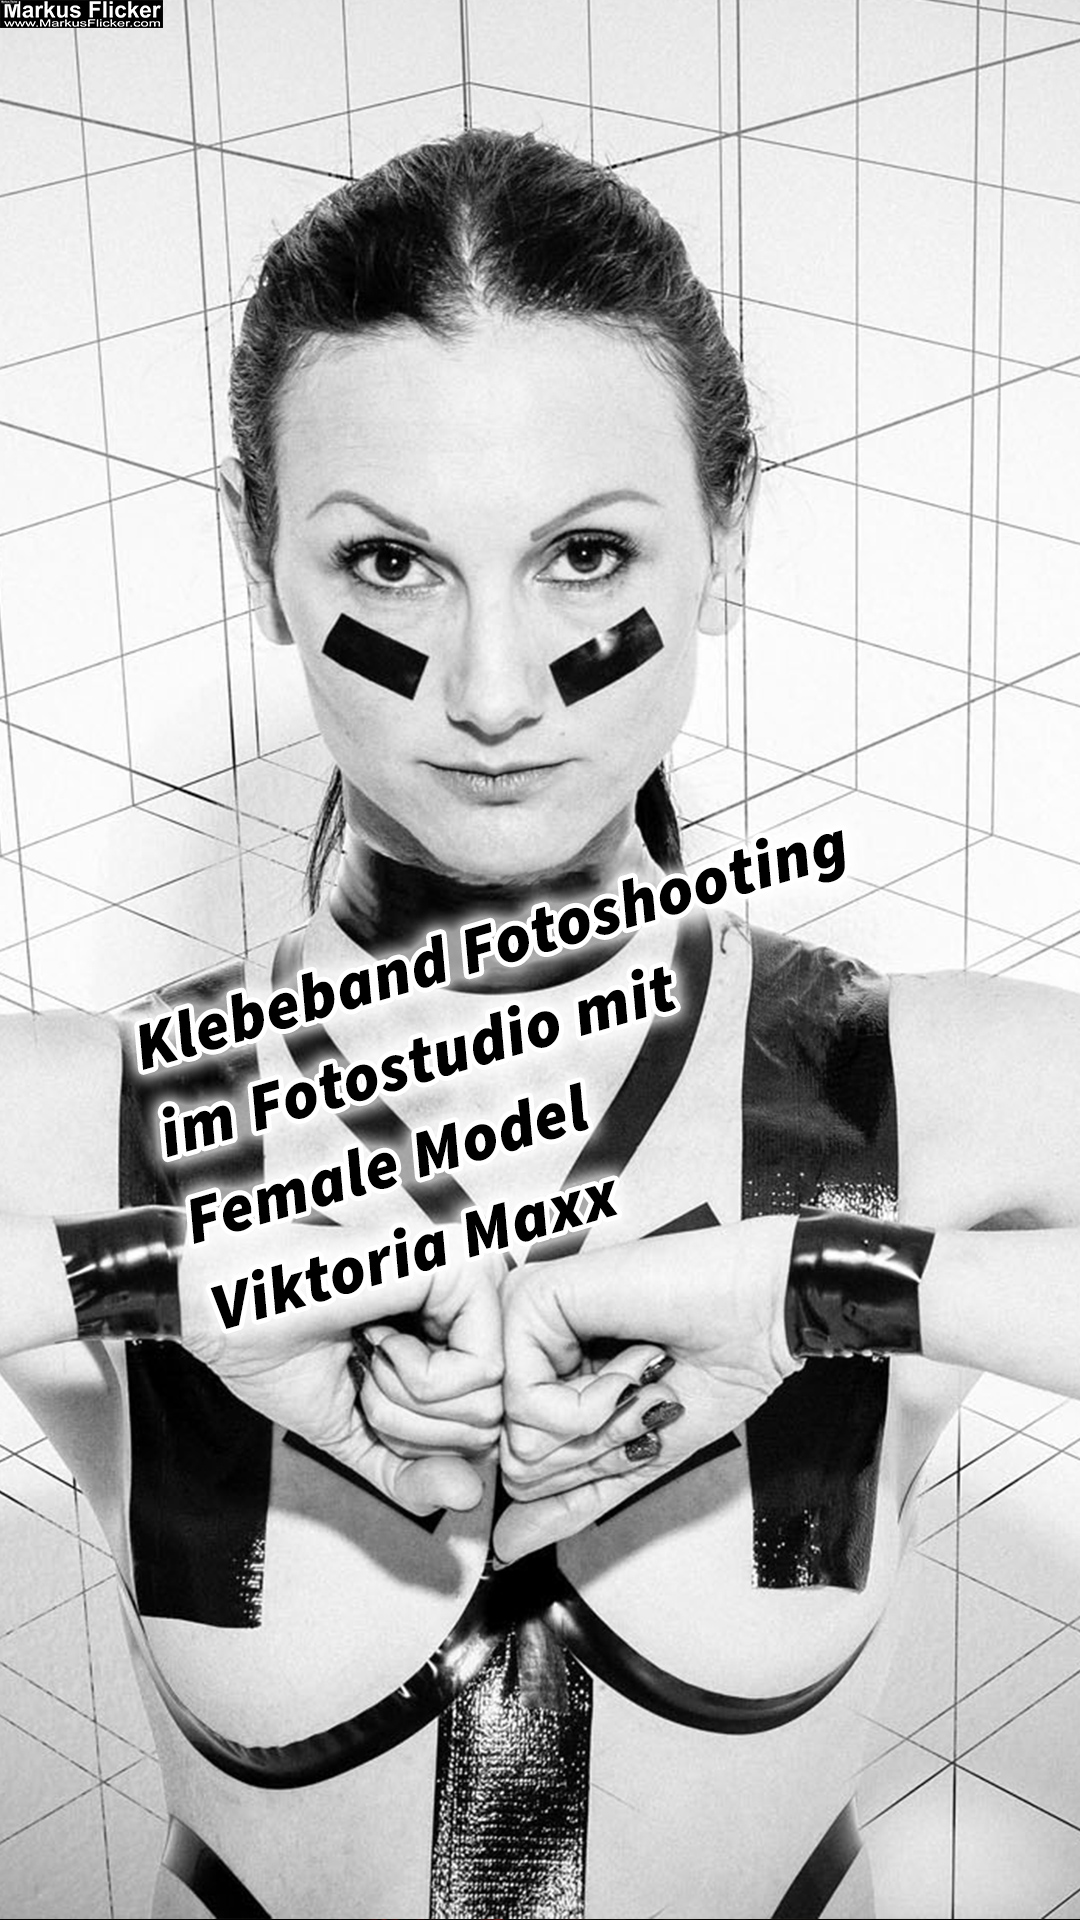 Klebeband Fotoshooting im Fotostudio mit Female Model Viktoria Maxx #TapeTheModelPhotography